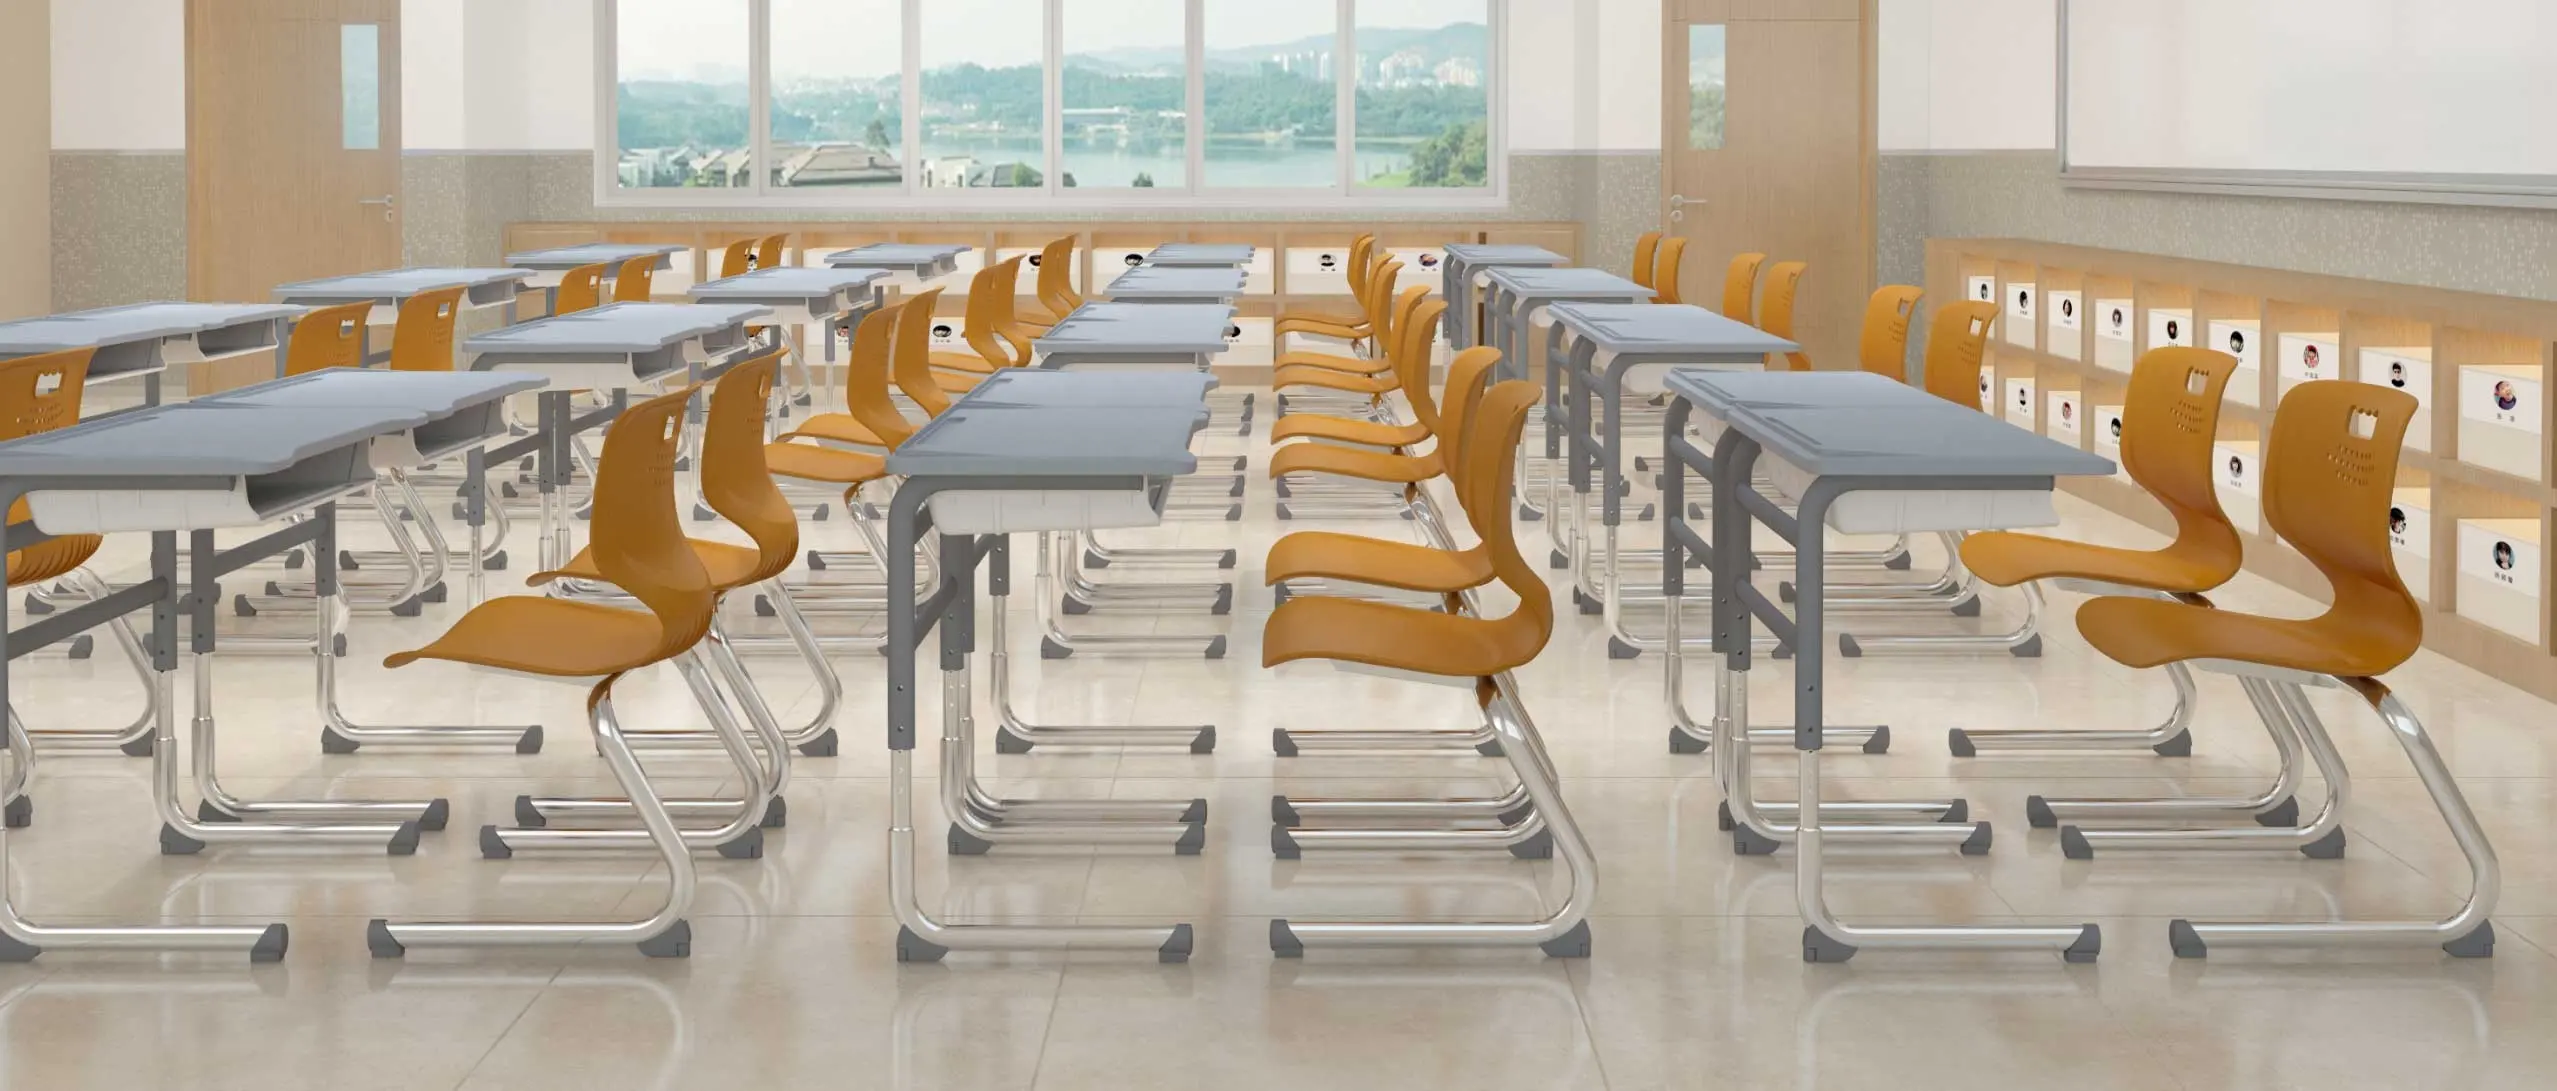 Mesa e cadeira ajustável para estudantes, mesa de estudo escolar com cadeiras, mobília de metal e plástico para sala de aula